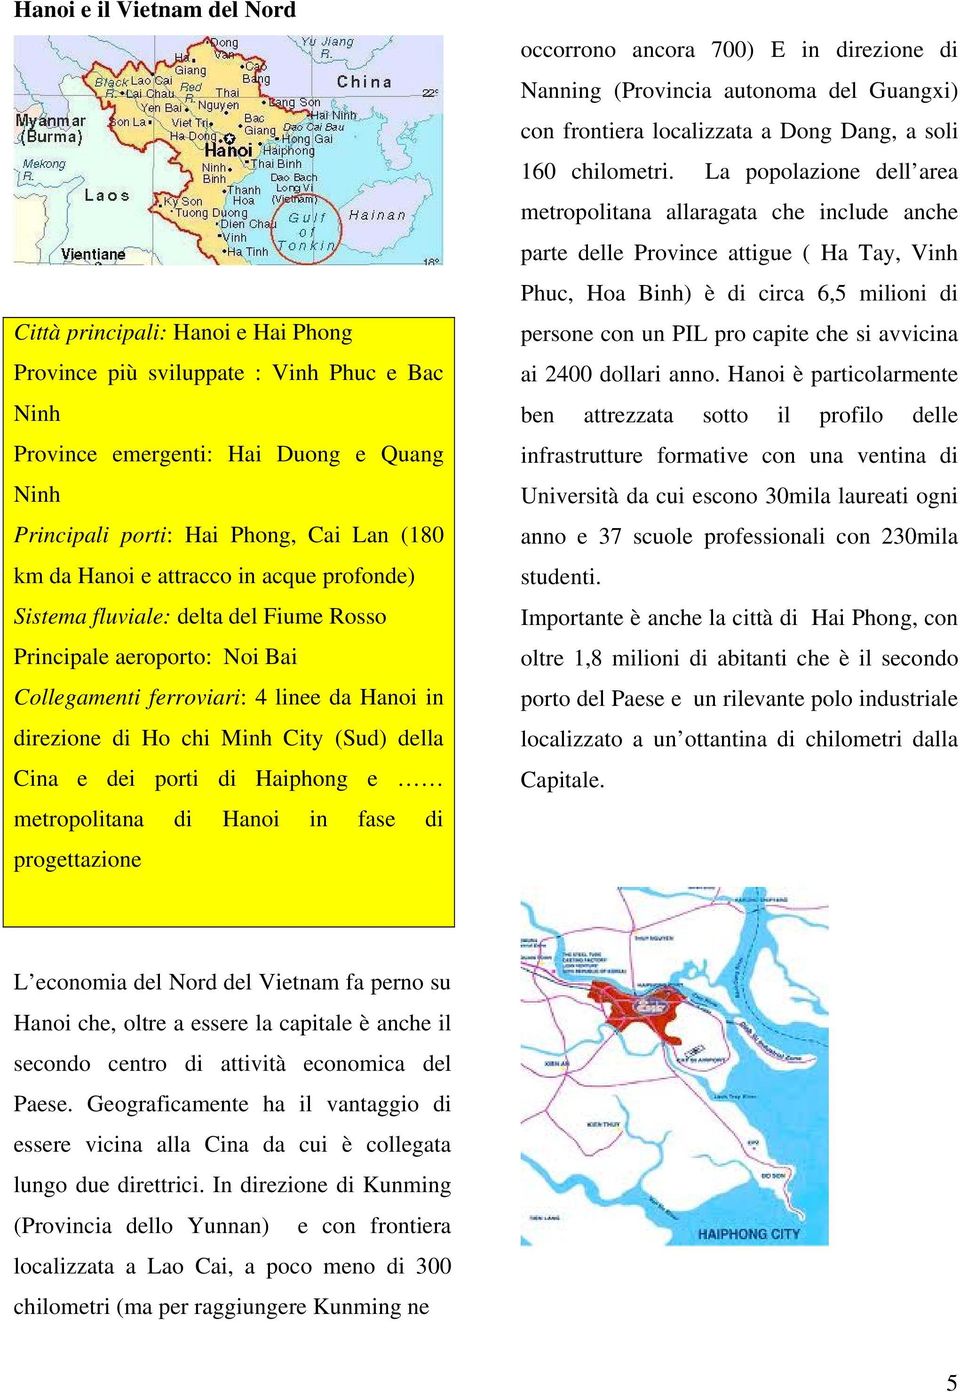 Cina e dei porti di Haiphong e metropolitana di Hanoi in fase di progettazione occorrono ancora 700) E in direzione di Nanning (Provincia autonoma del Guangxi) con frontiera localizzata a Dong Dang,